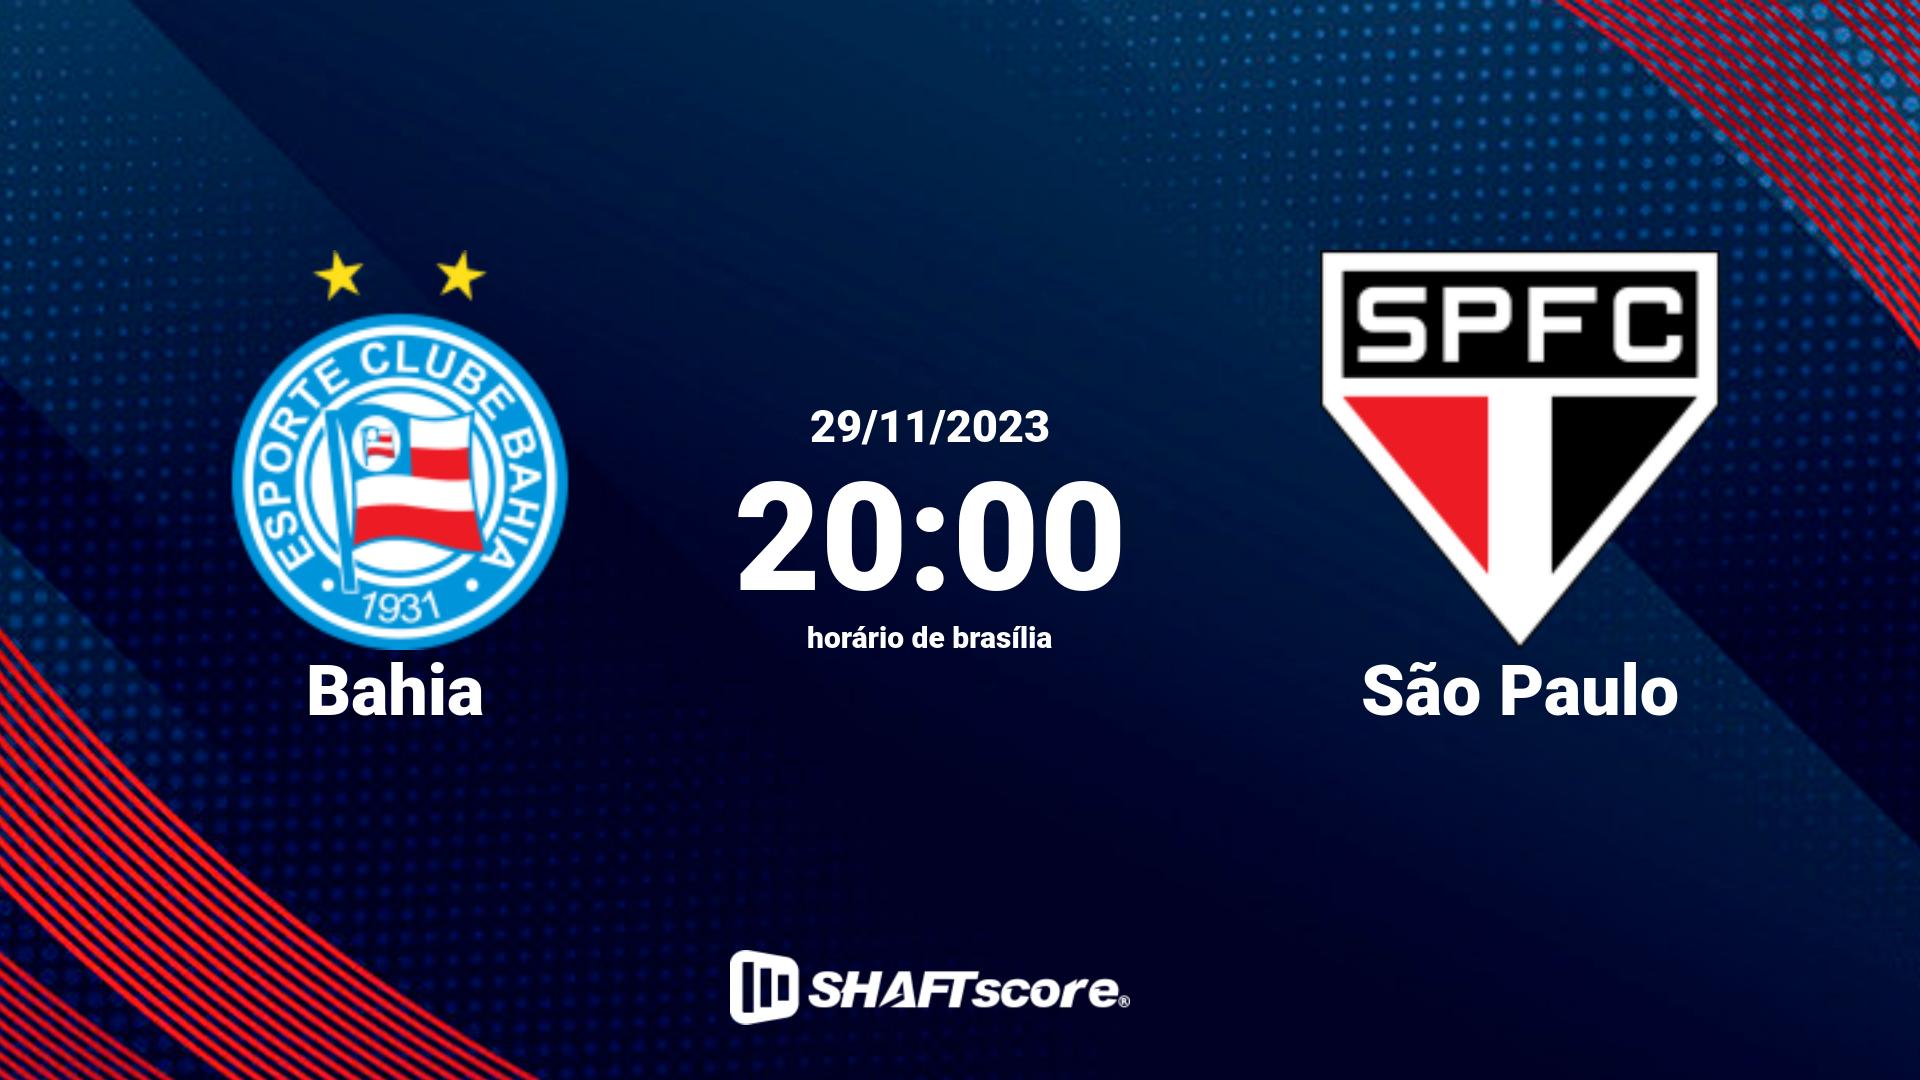 Estatísticas do jogo Bahia vs São Paulo 29.11 20:00